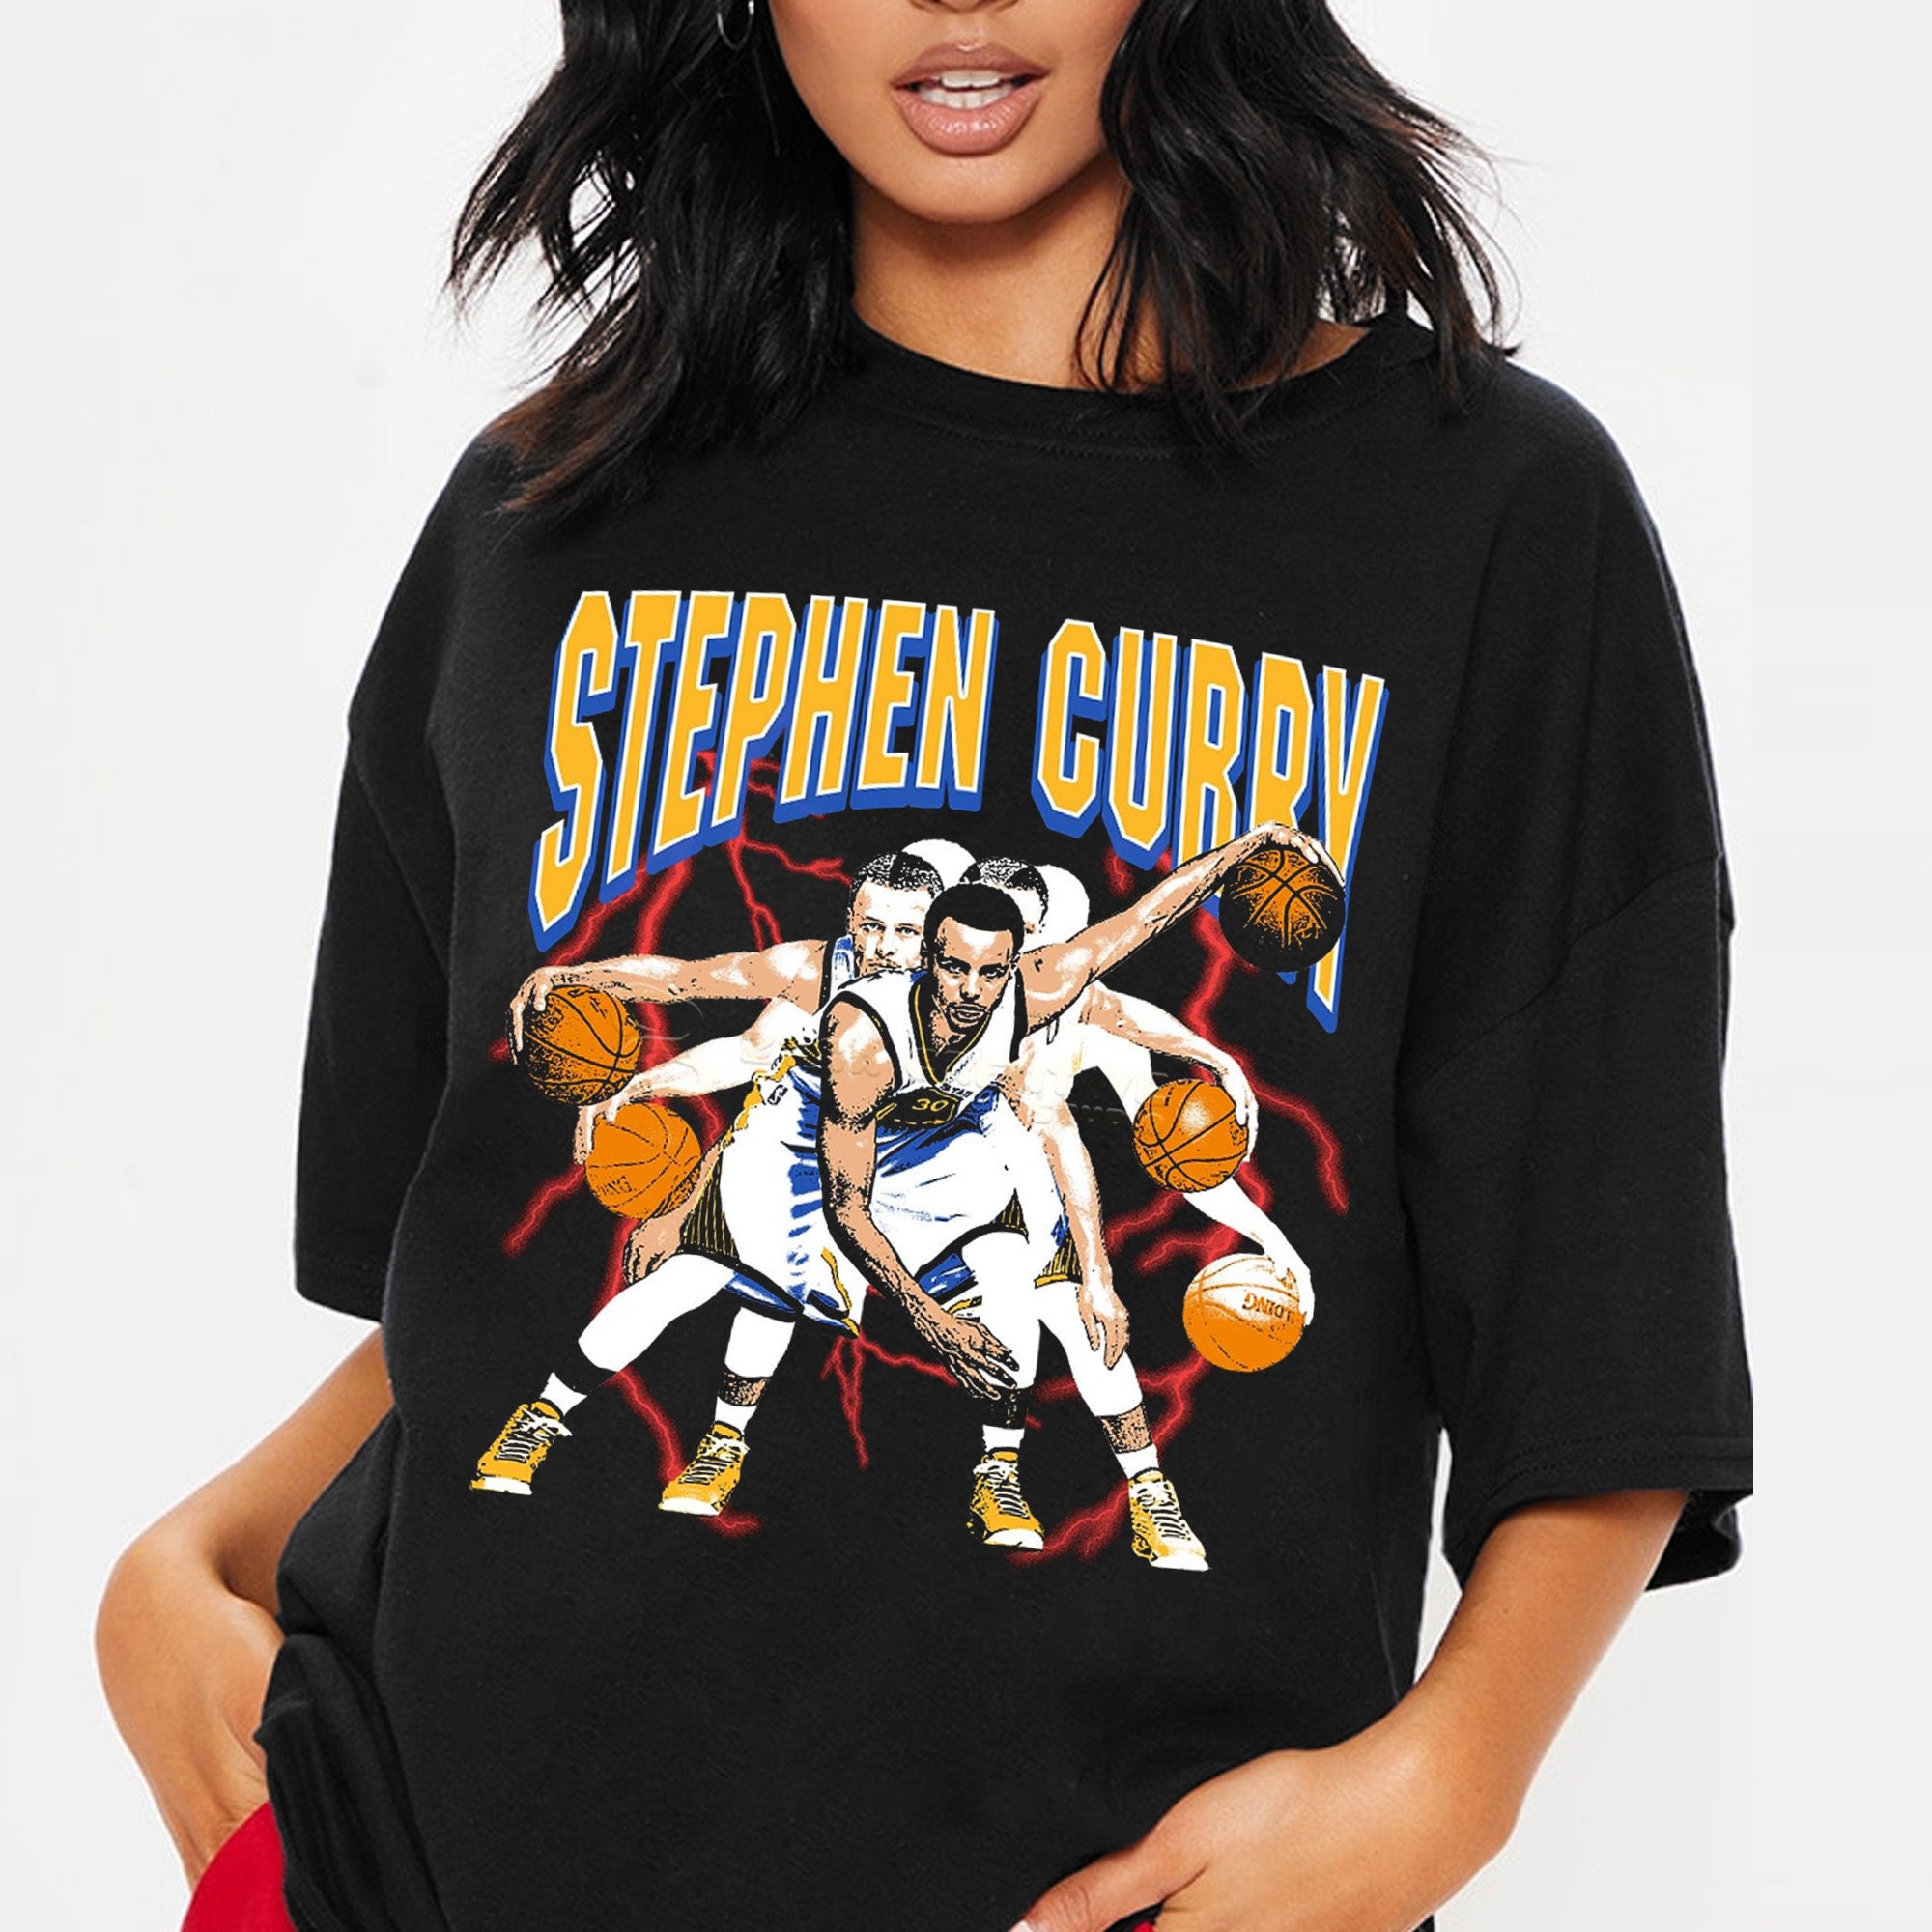 steph curry shirt women